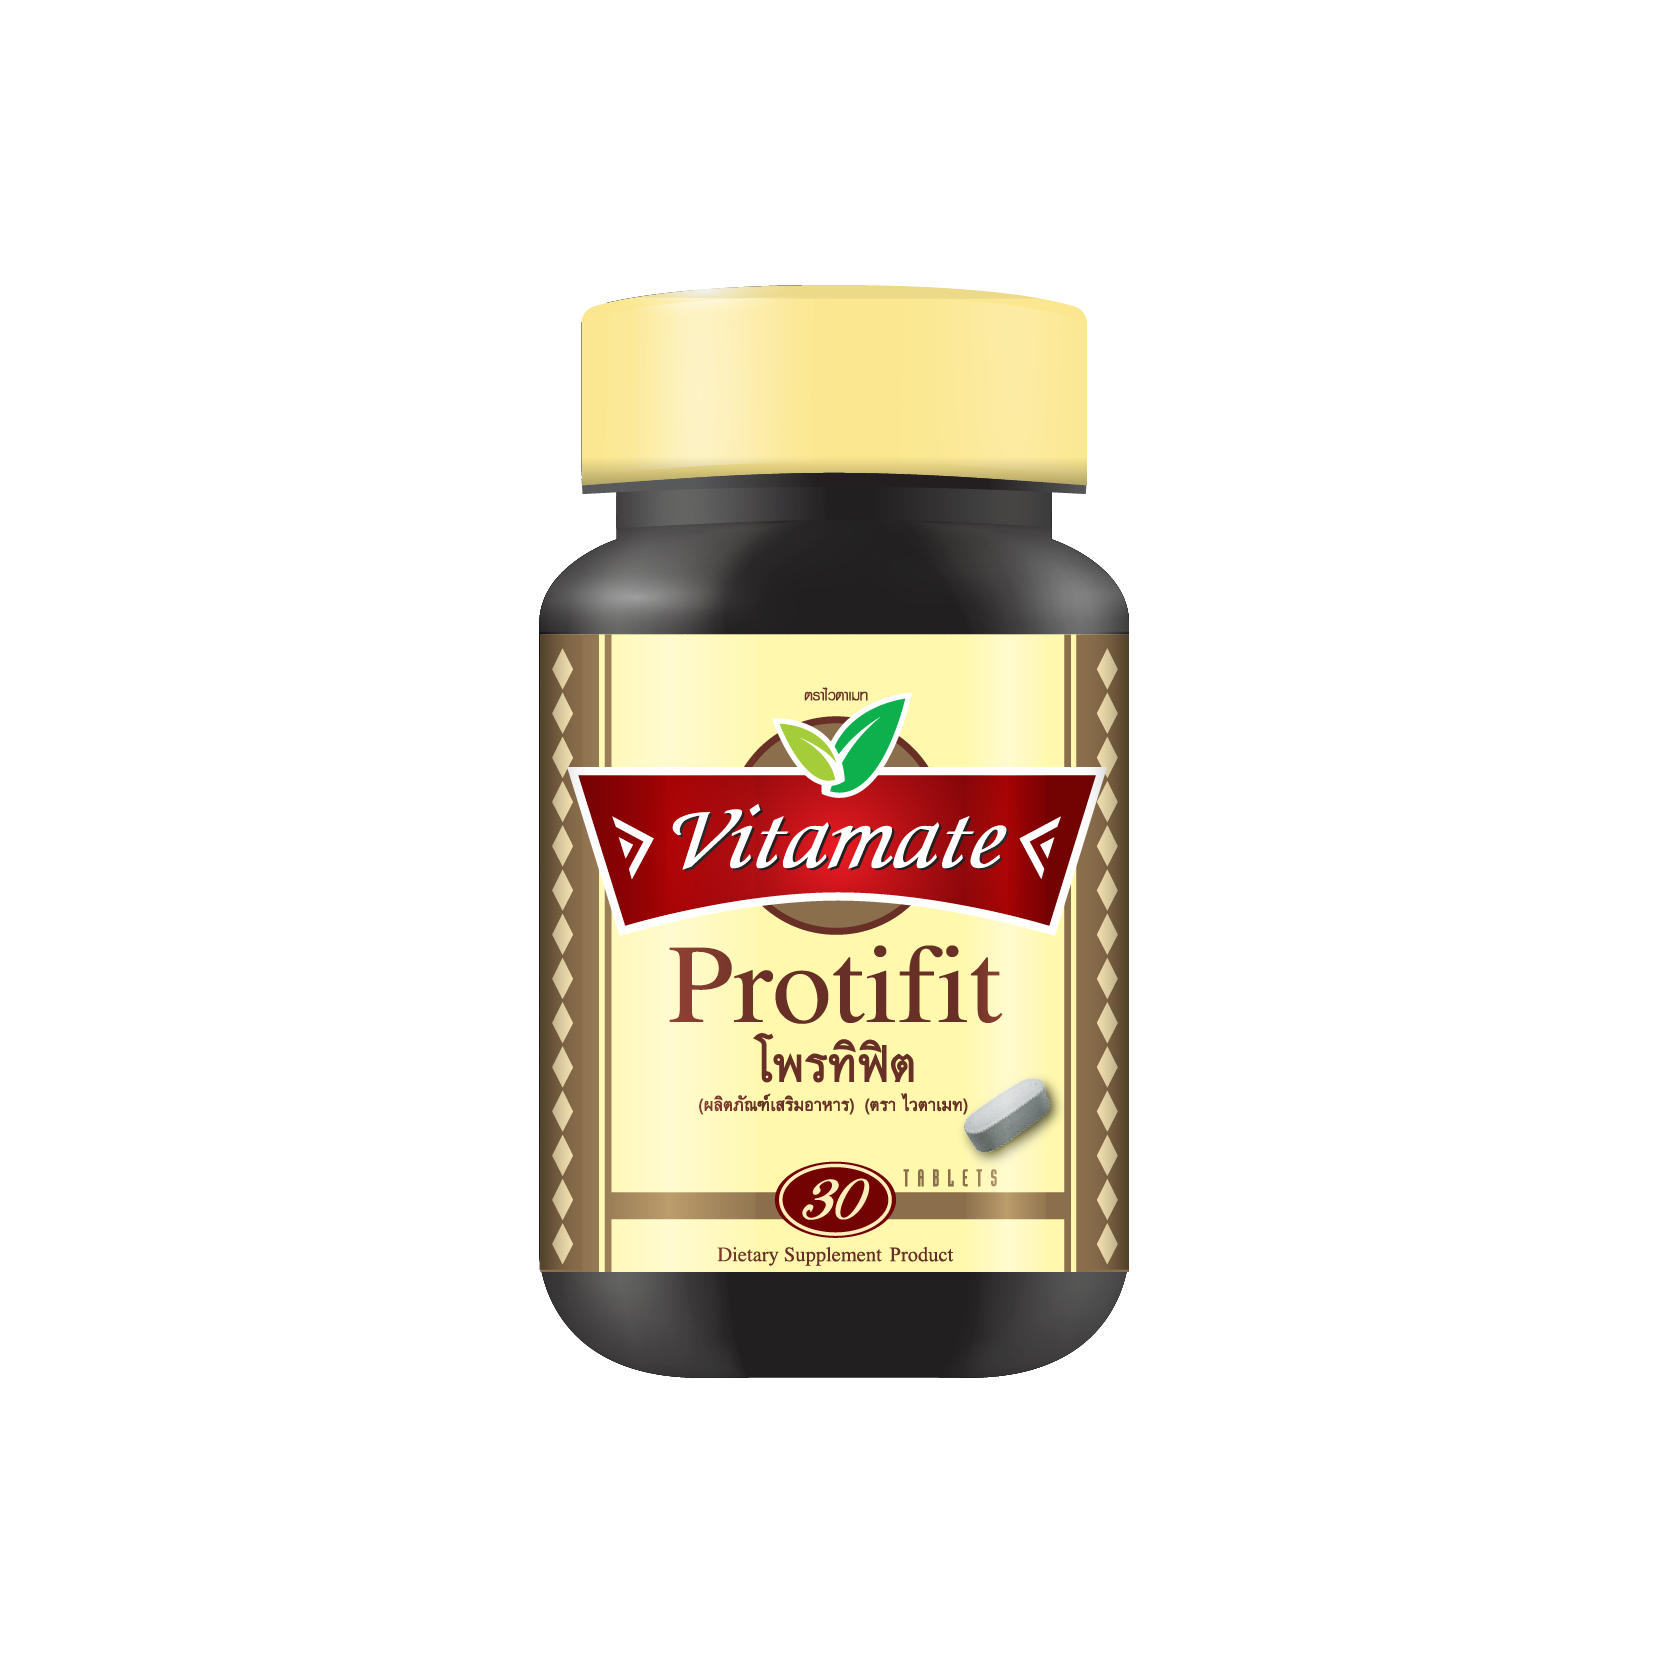 Vitamate Protifit